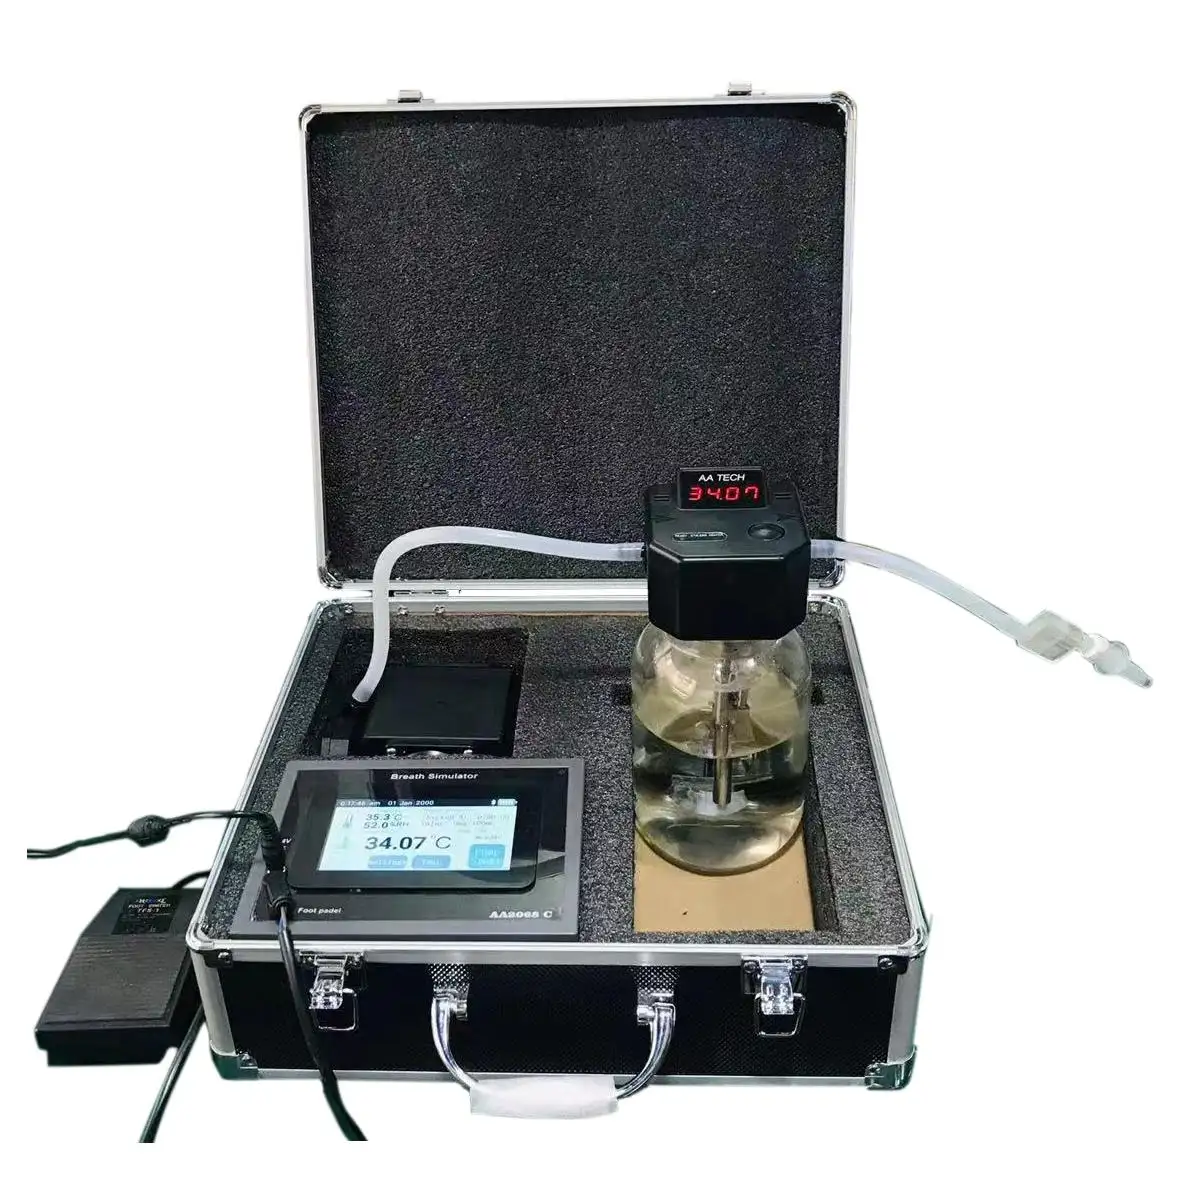 Pantalla táctil capacitiva de 4,3 "Simulador de prueba de aliento de alcohol AA2068C. Puede adaptar la Plataforma de calibración del comprobador de alcohol